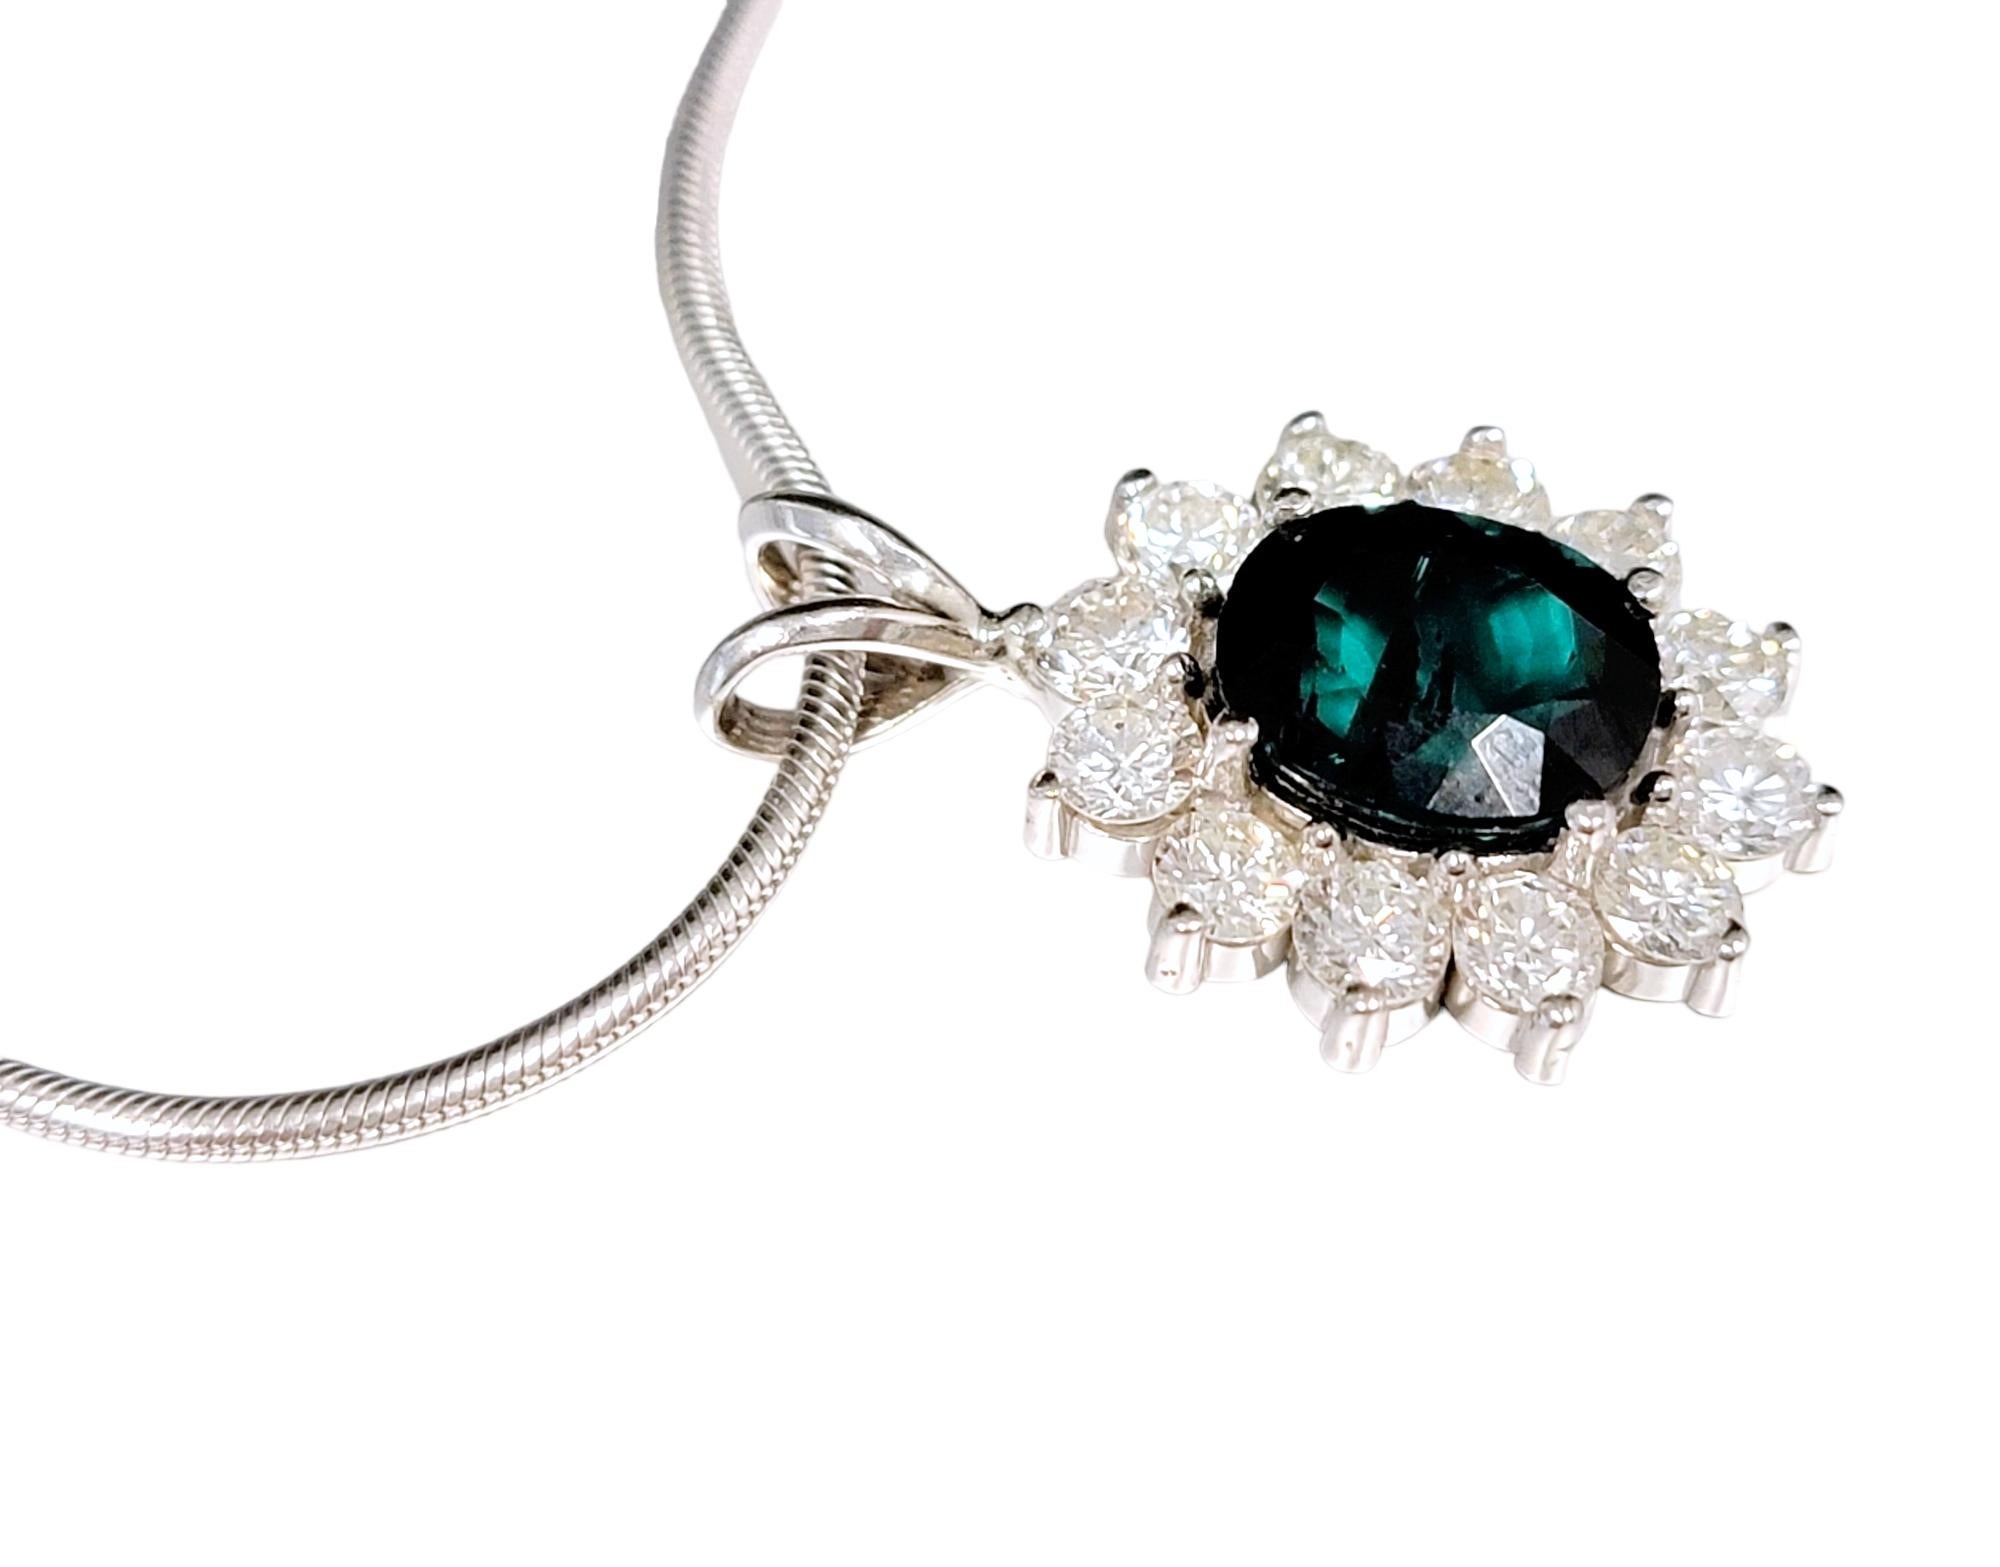 Absolument magnifique collier à halo de tourmaline et de diamants, gracieusement suspendu à une délicate chaîne serpent en or blanc. Cette pièce exquise est une véritable incarnation de l'élégance et de la sophistication, ce qui en fait une pièce